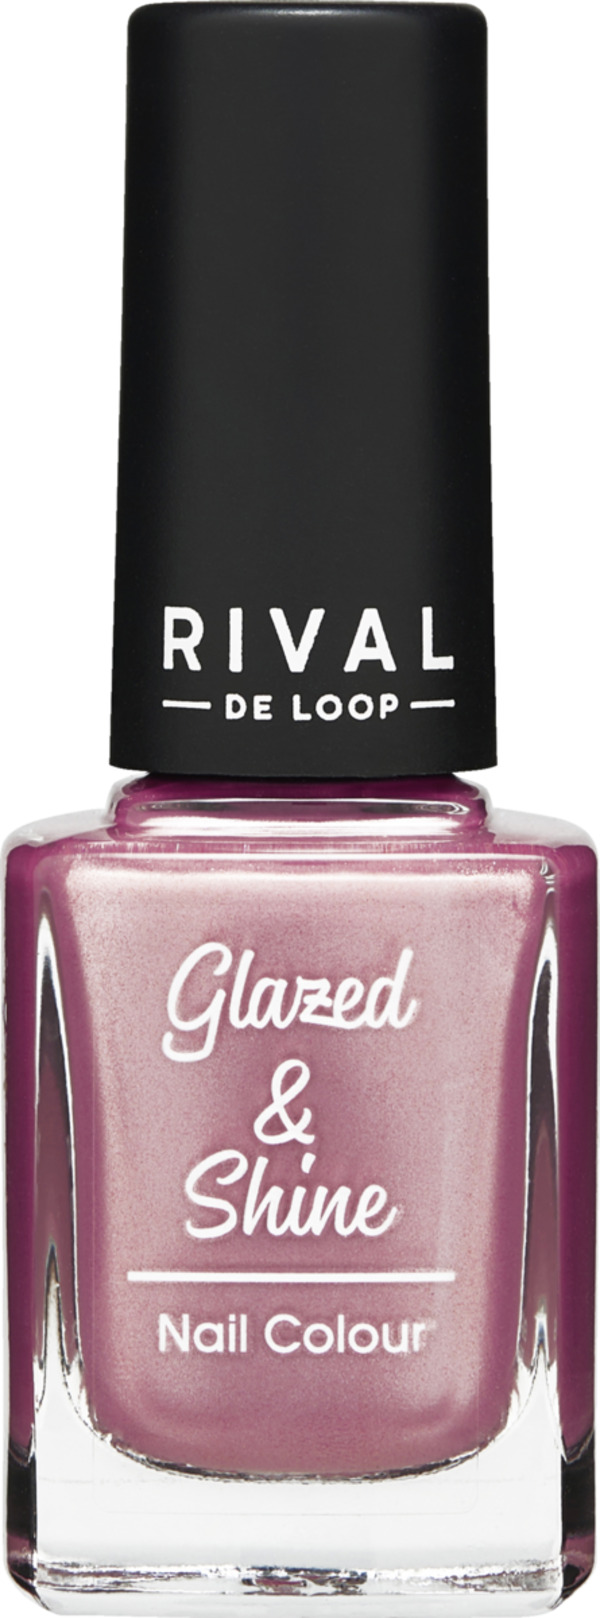 Bild 1 von RIVAL DE LOOP Glazed & Shine 05 Nail Colour